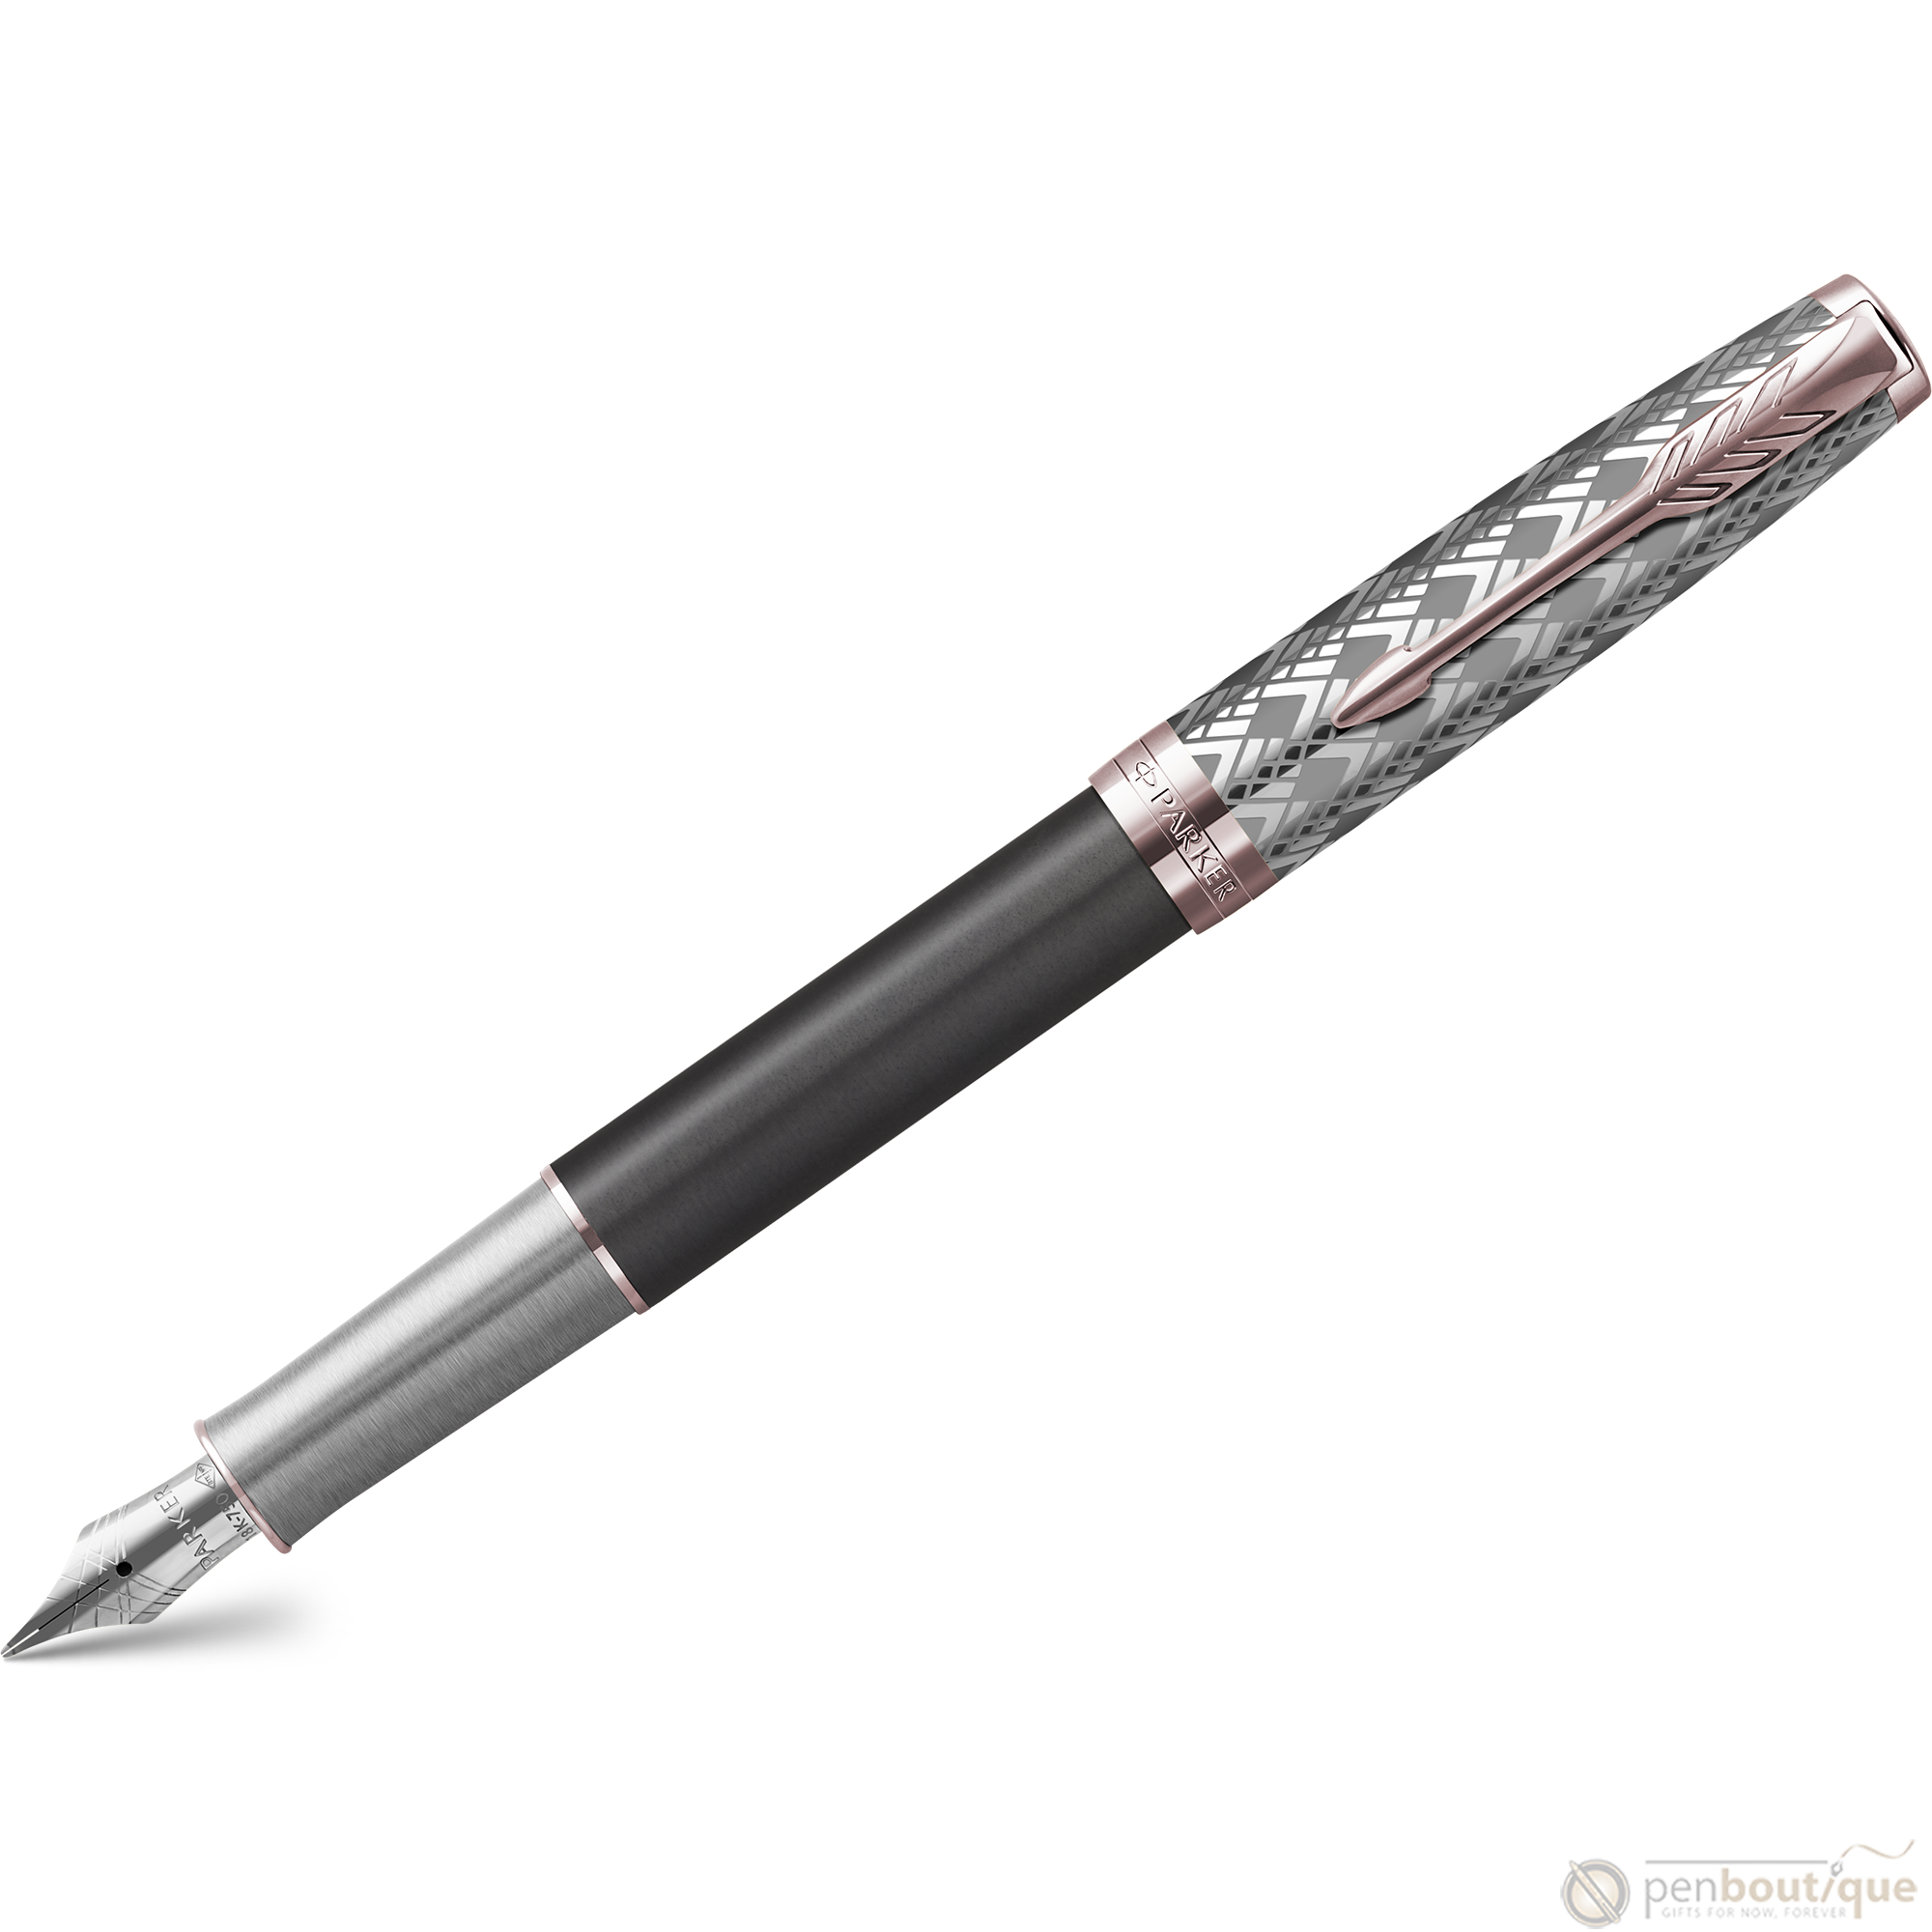 Parker Sonnet Premium Refresh Fountain Pen - Metal & Grey - Pink Gold Trim-Pen Boutique Ltd